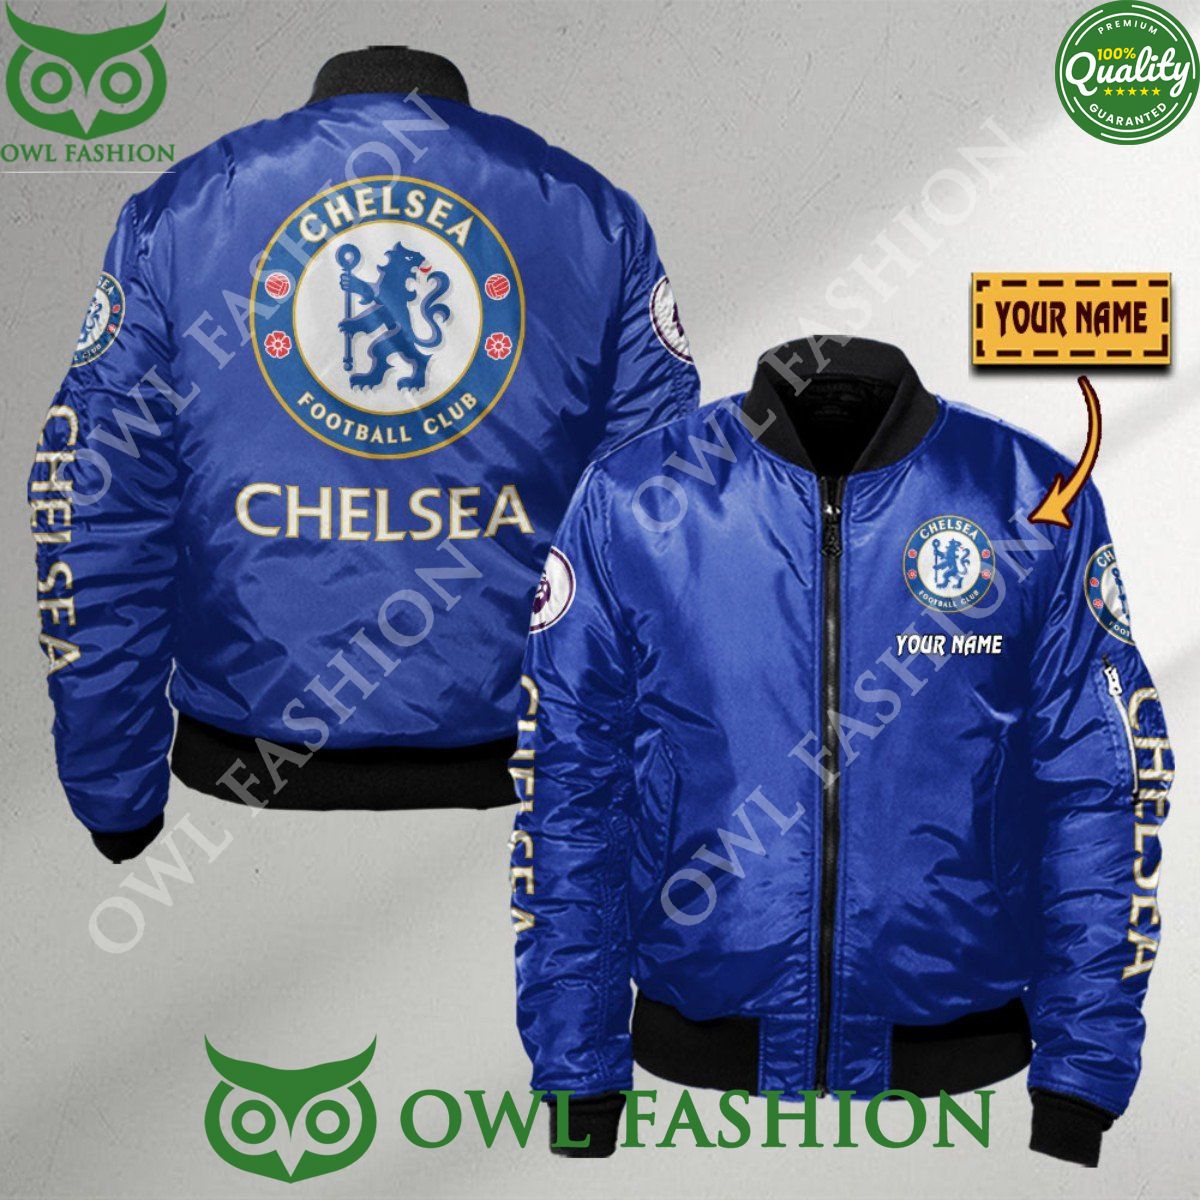 Premier League Chelsea F.C. Customized 3D Bomber Jacket Trending picture dear